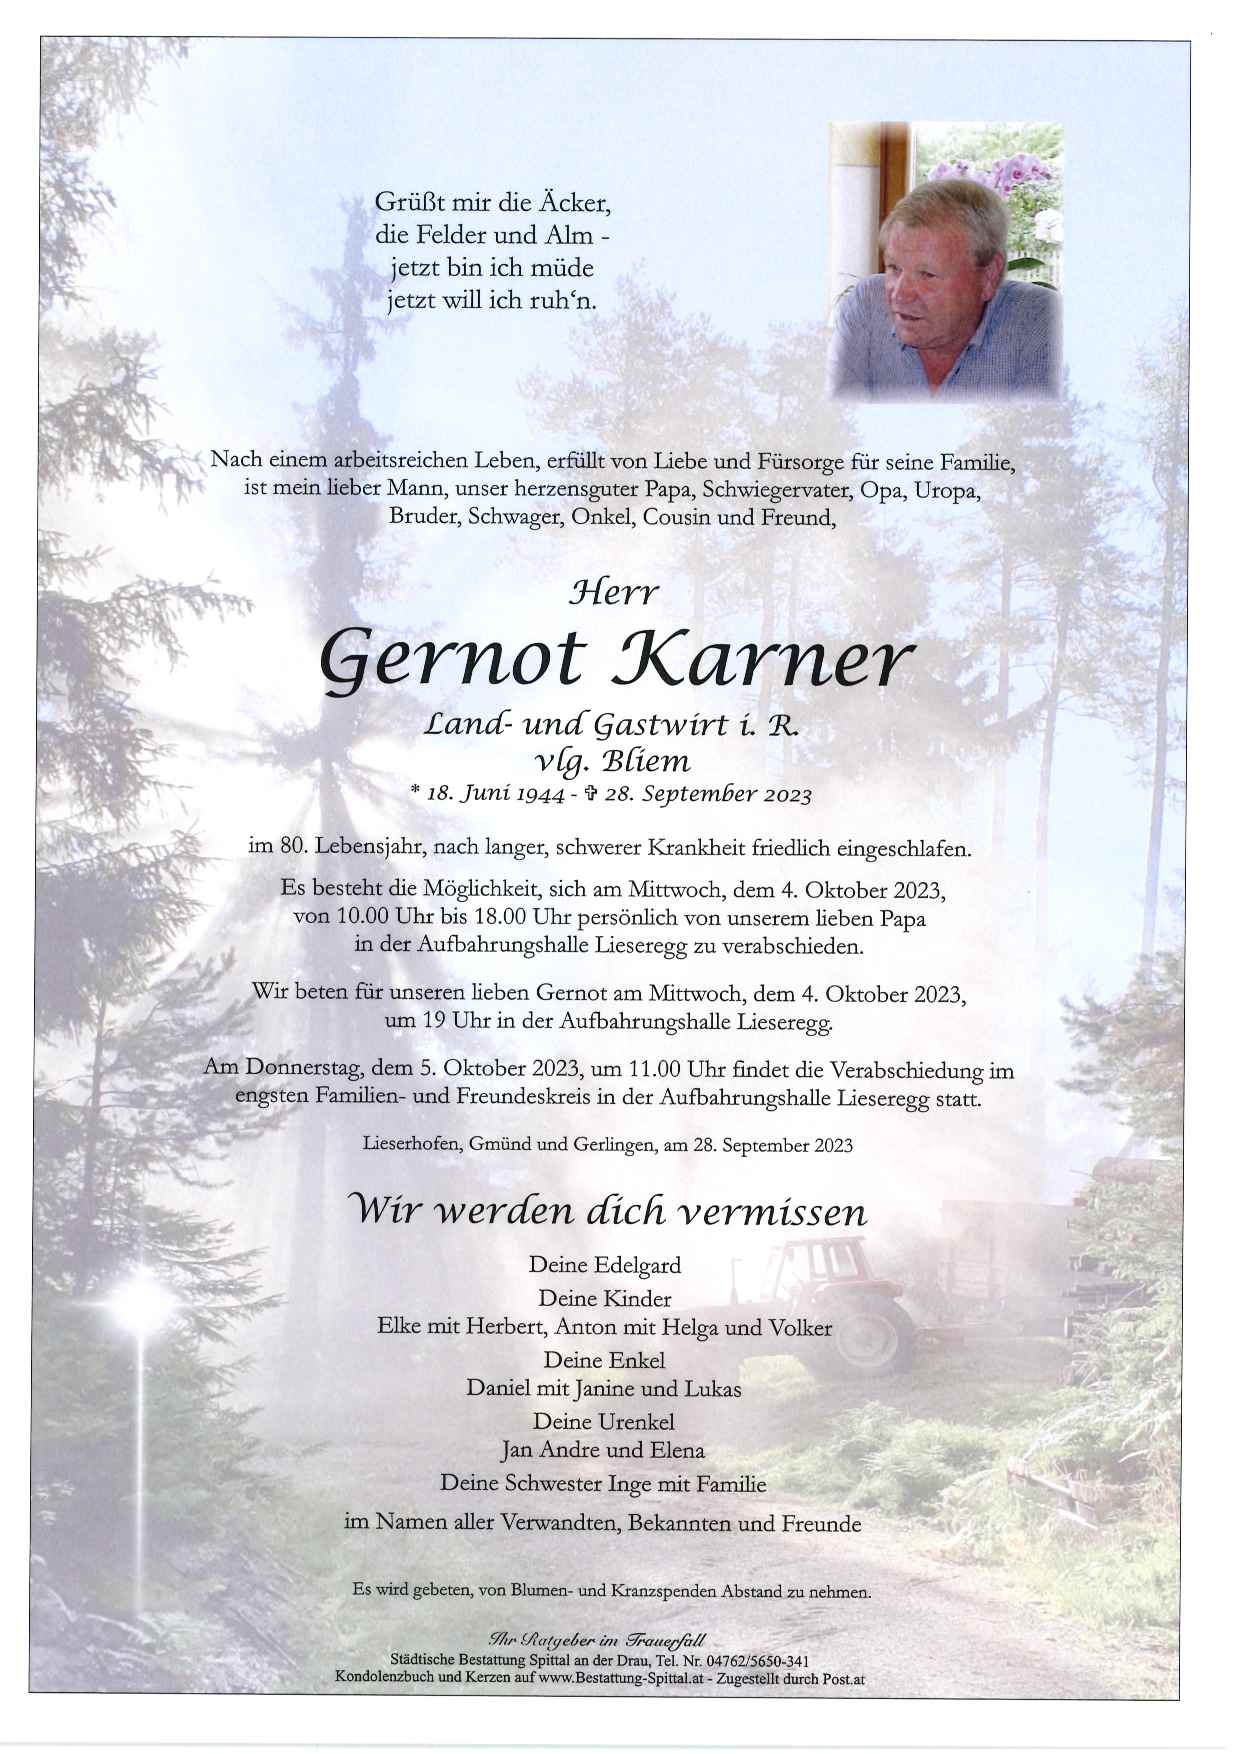 Gernot Karner